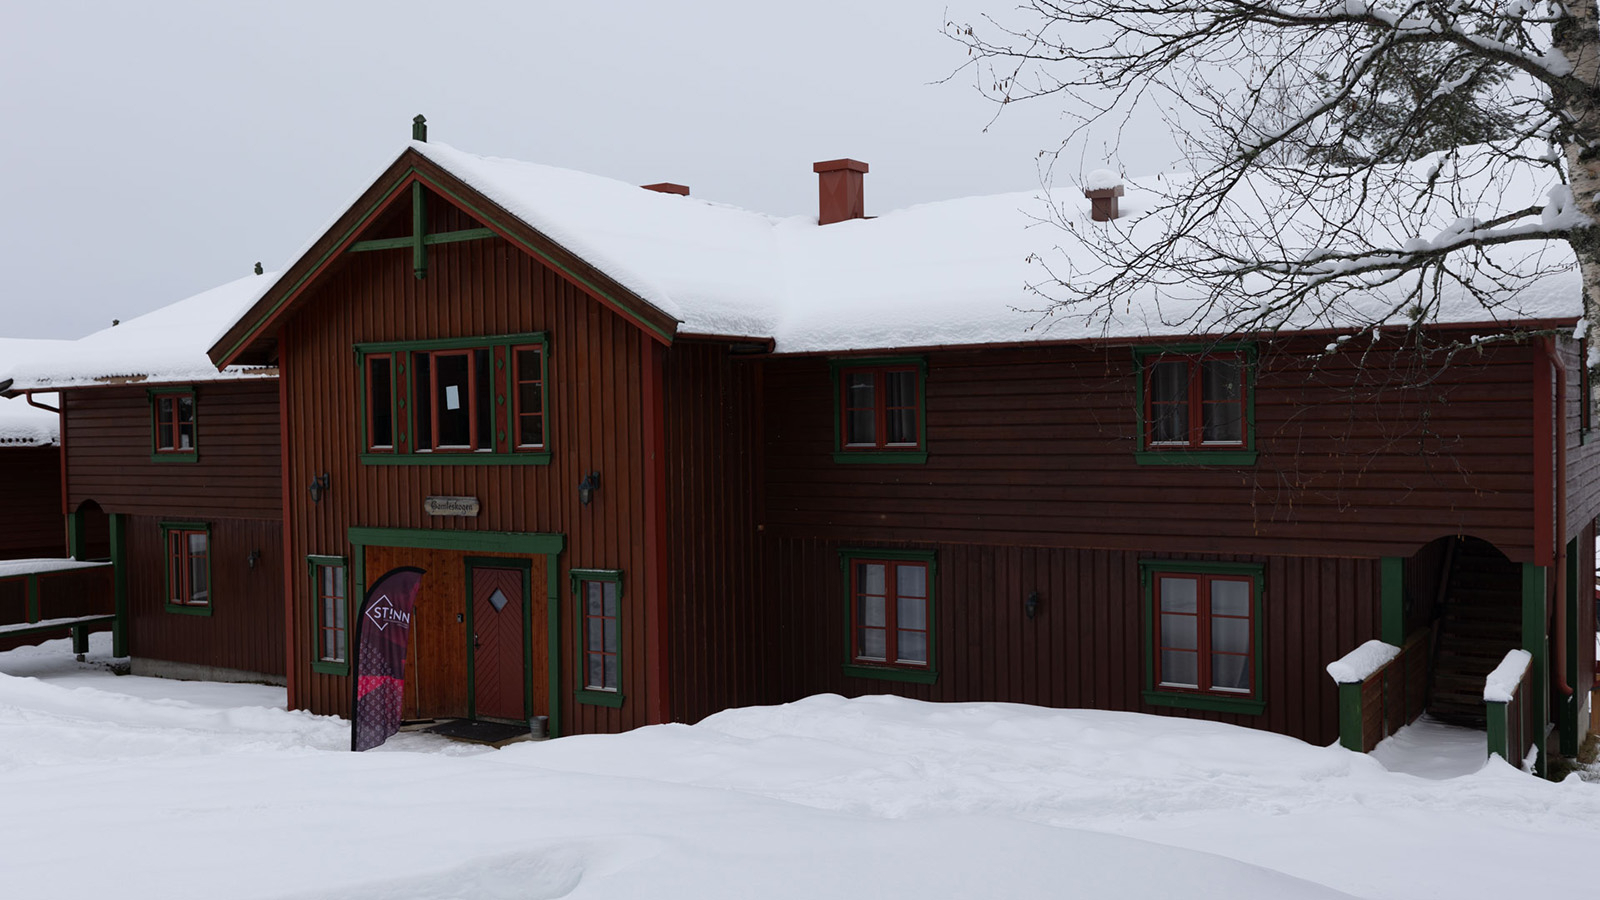 En stor hytte, dekket i snø, med et StInn-flagg utenfor hoveddøra.